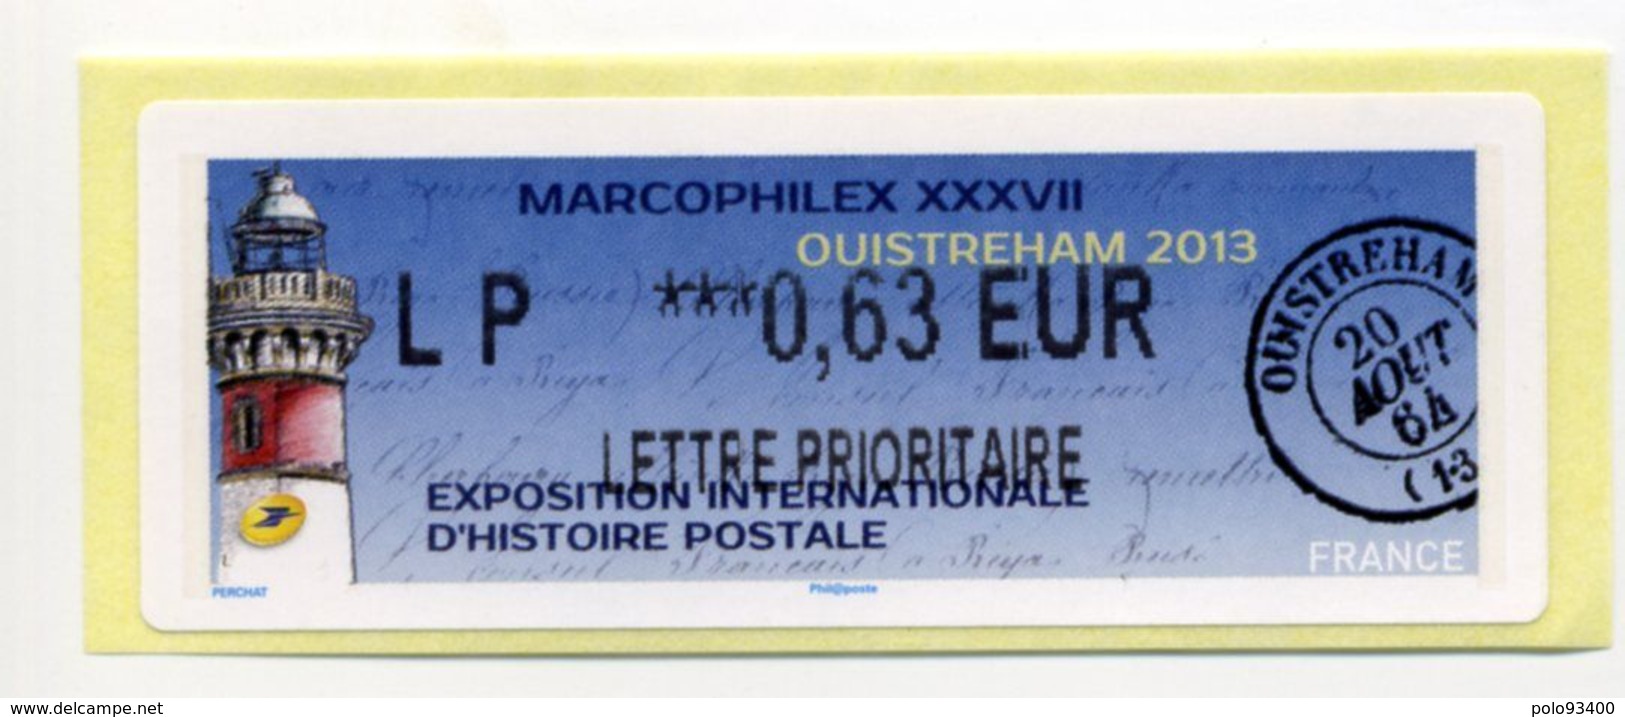 2013 LISA 2 LP 0.63 Euro MARCOPHILEX XXXVII  à OUISTREHAM - 2010-... Illustrated Franking Labels